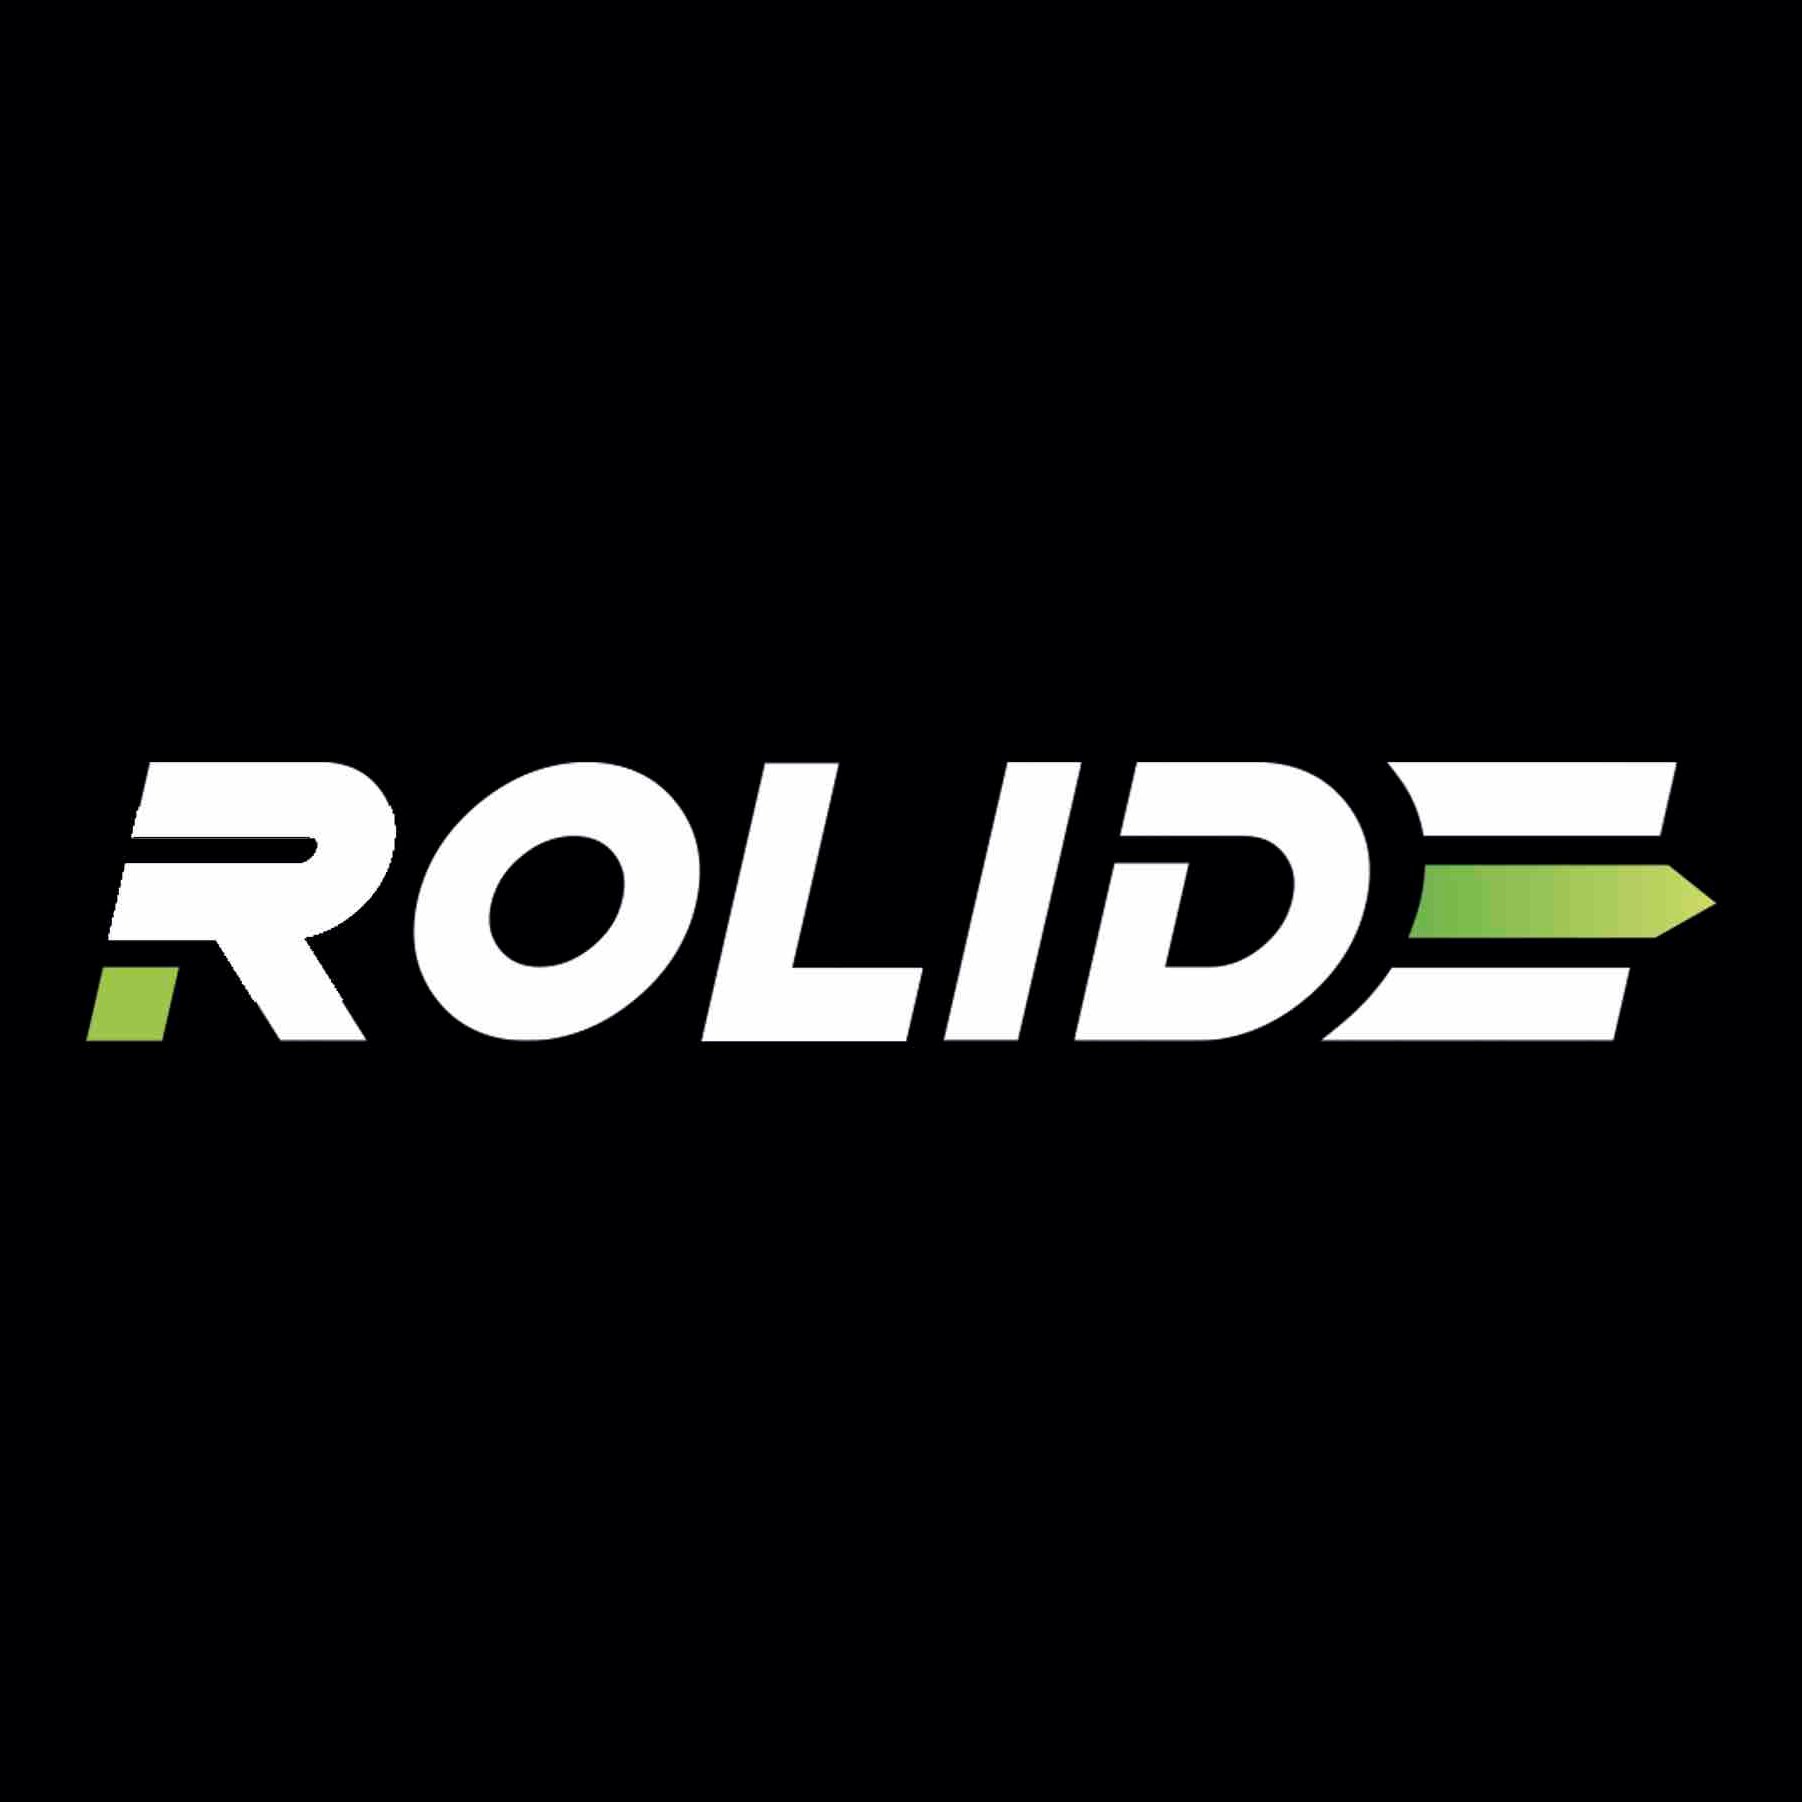 Rolide est une innovation dans le monde de l'utilitaire et du Pick-up avec son plancher coulissant pour faciliter le chargement et déchargement de matériel.